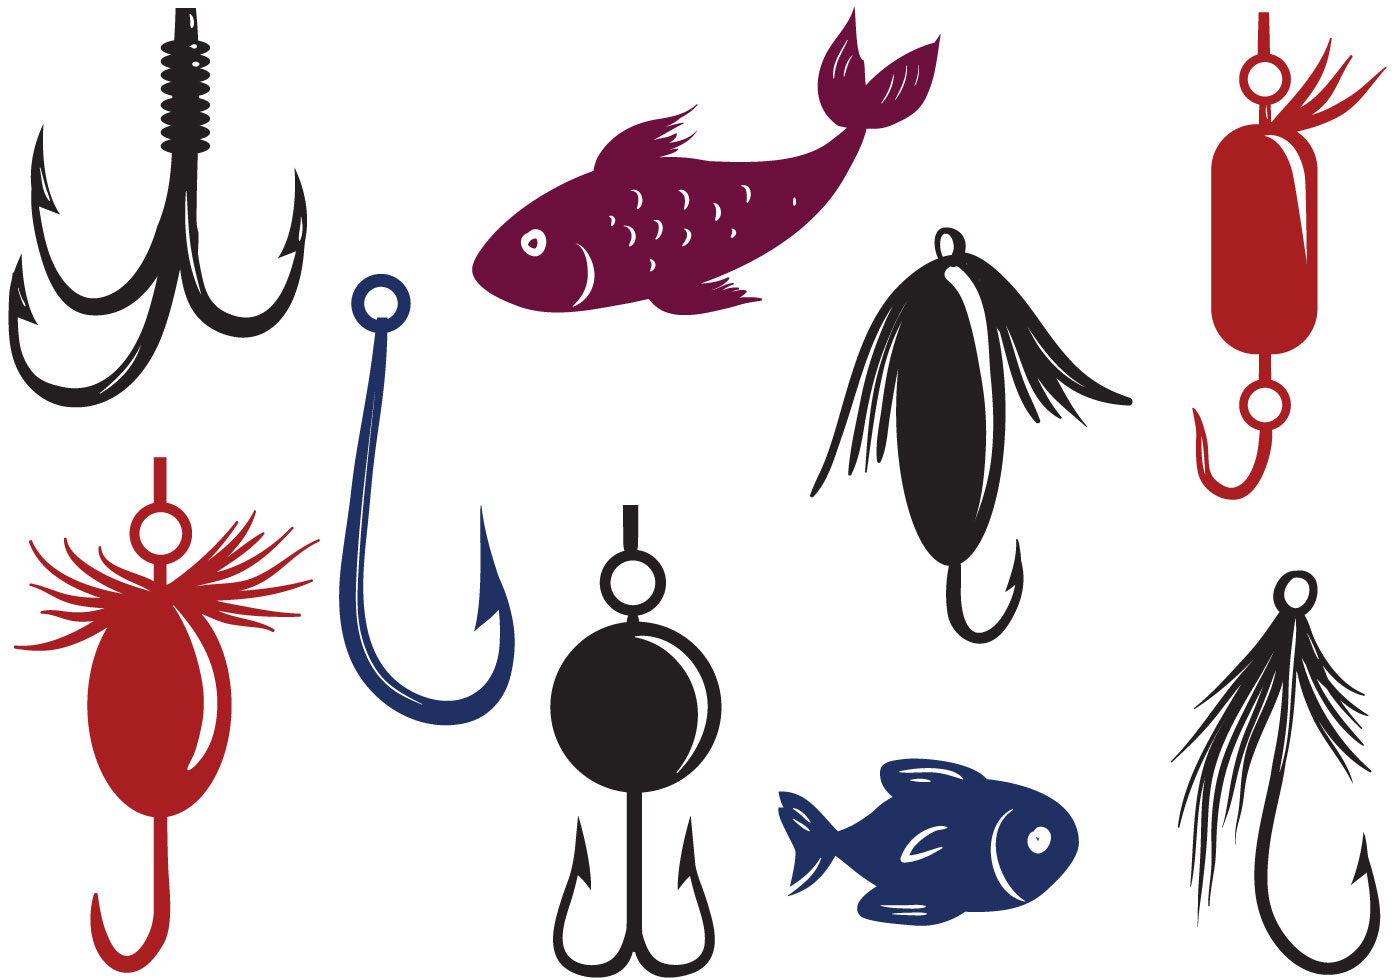 Download Free Fishing Lure Vectors - Download Free Vectors, Clipart Graphics & Vector Art